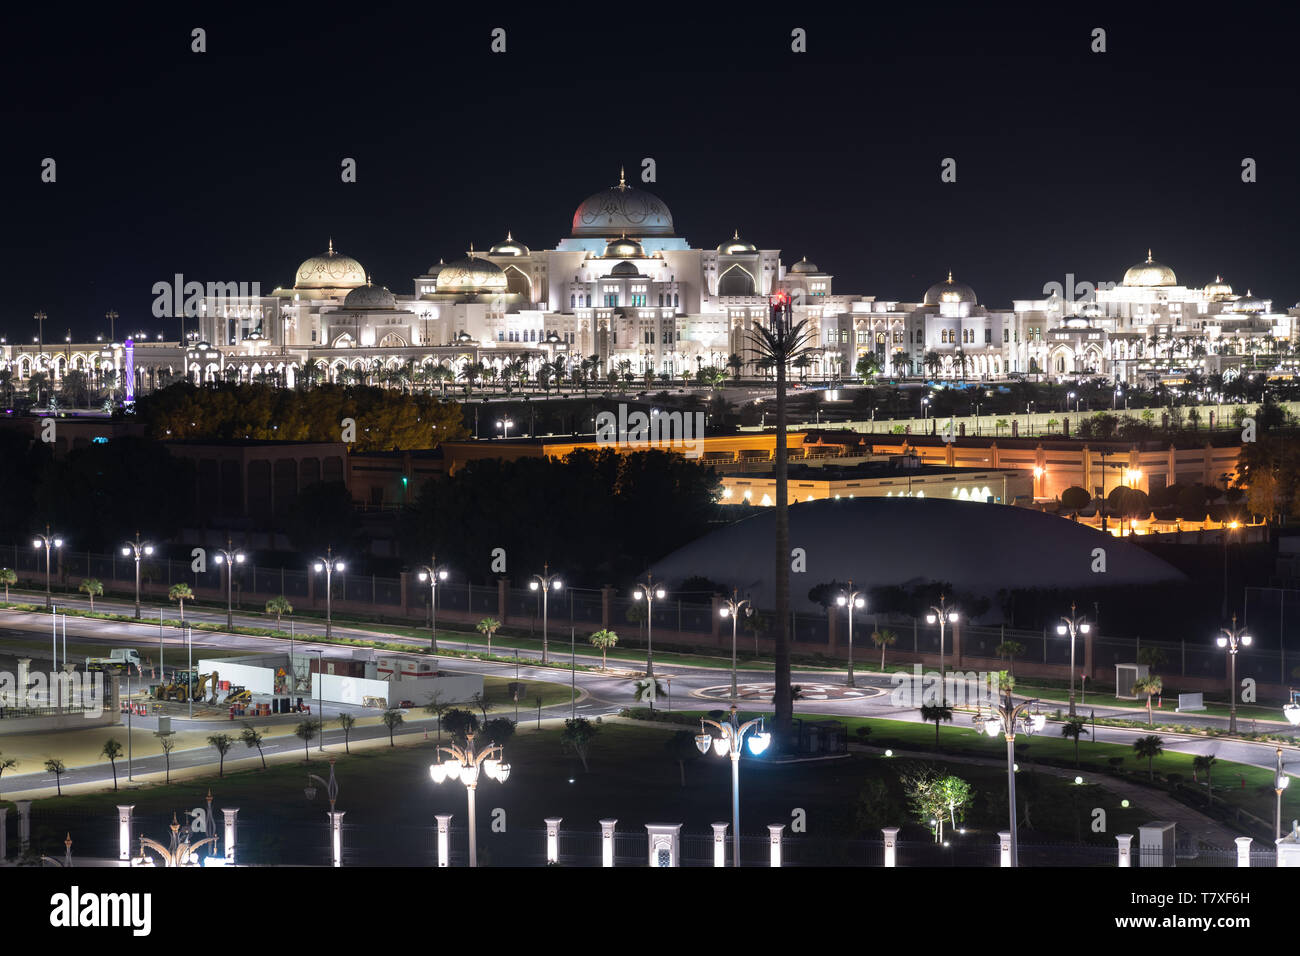 Abu Dhabi, UAE - 30 mars. 2019. Palais présidentiel de émirat d'Abu Dhabi en nuit Banque D'Images